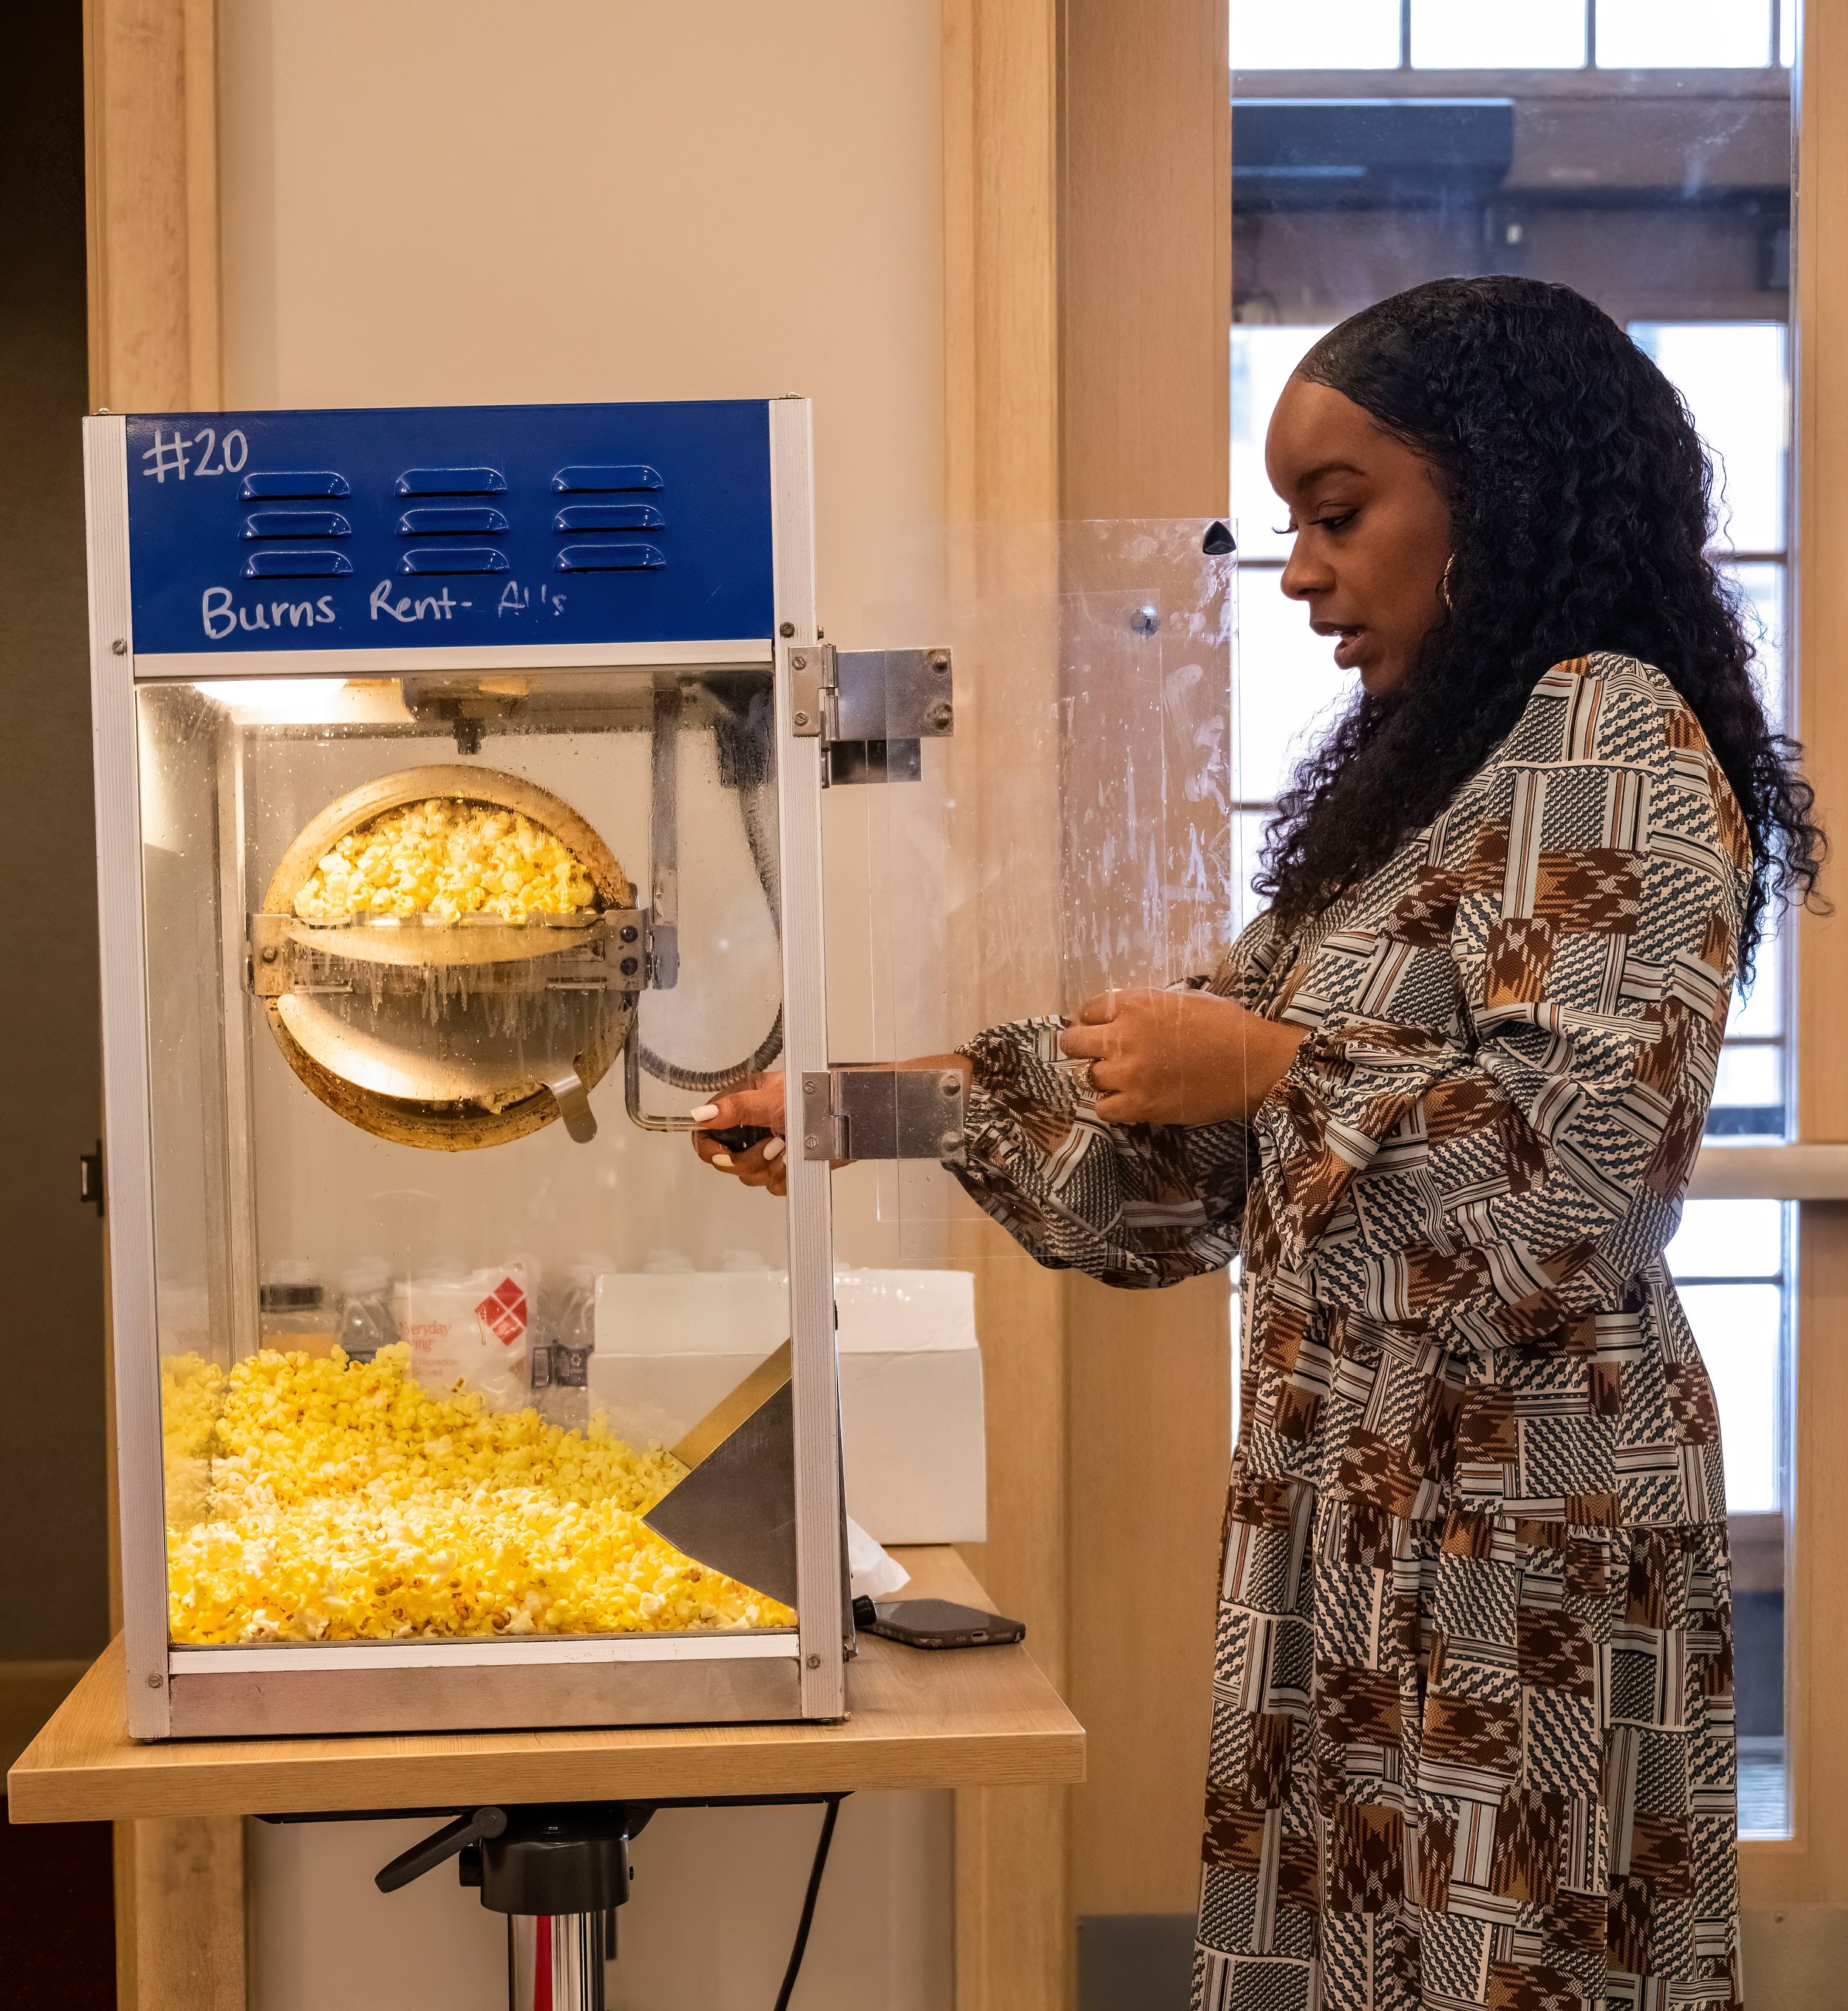 Mihkail_s Wife Making Popcorn 1.jpg